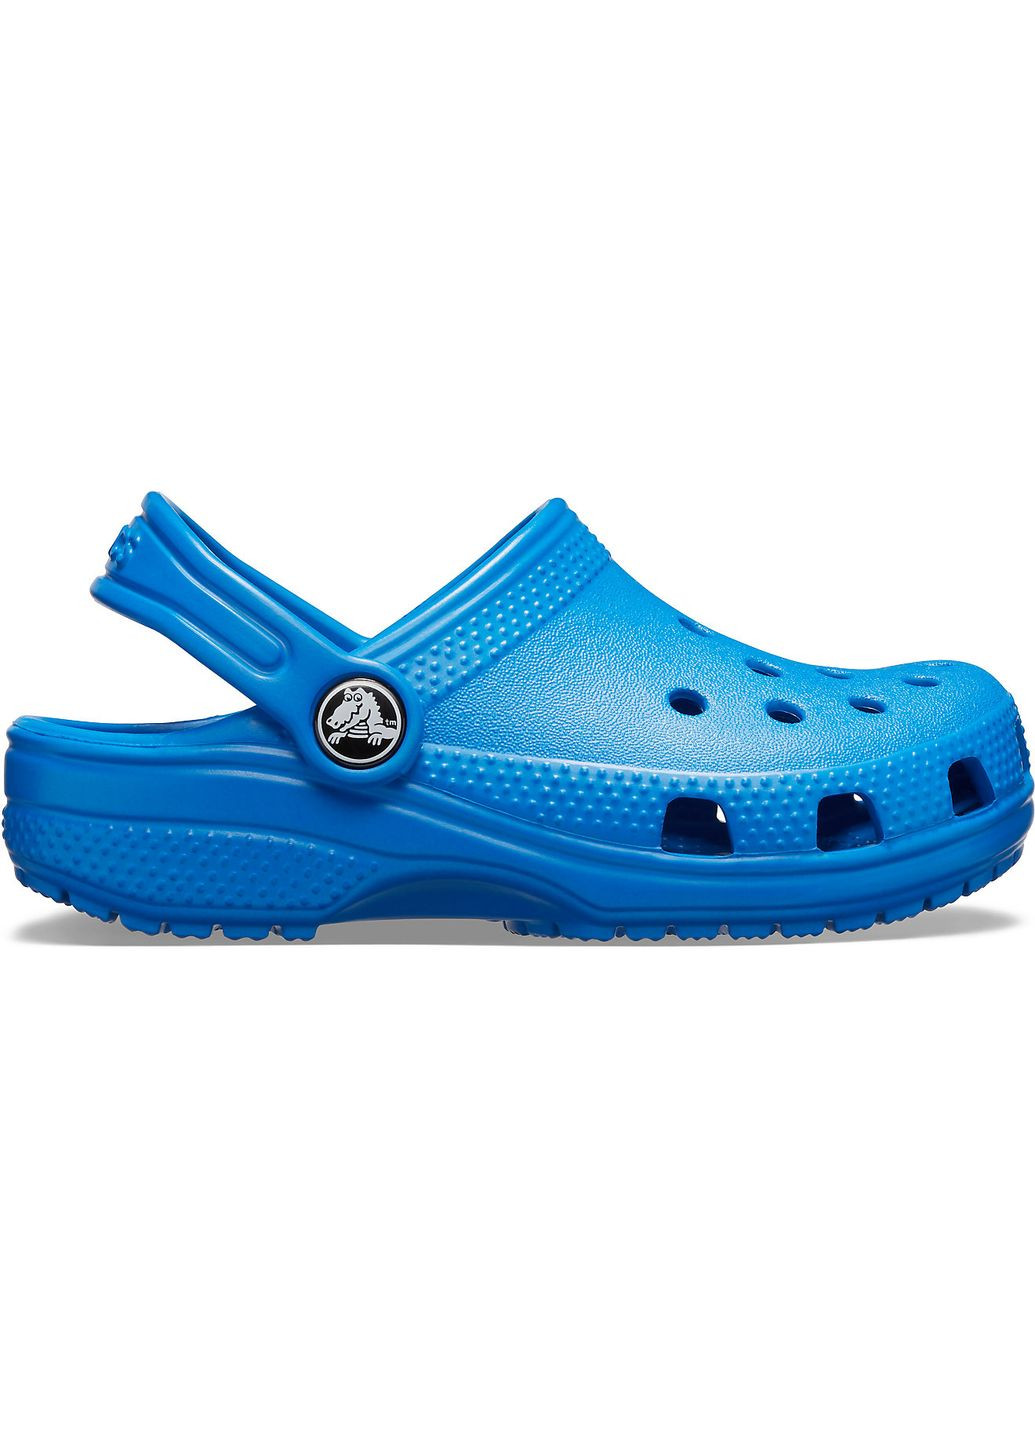 Синие сабо kids classic clog blue bolt j3\34\22.5 см 206991 Crocs